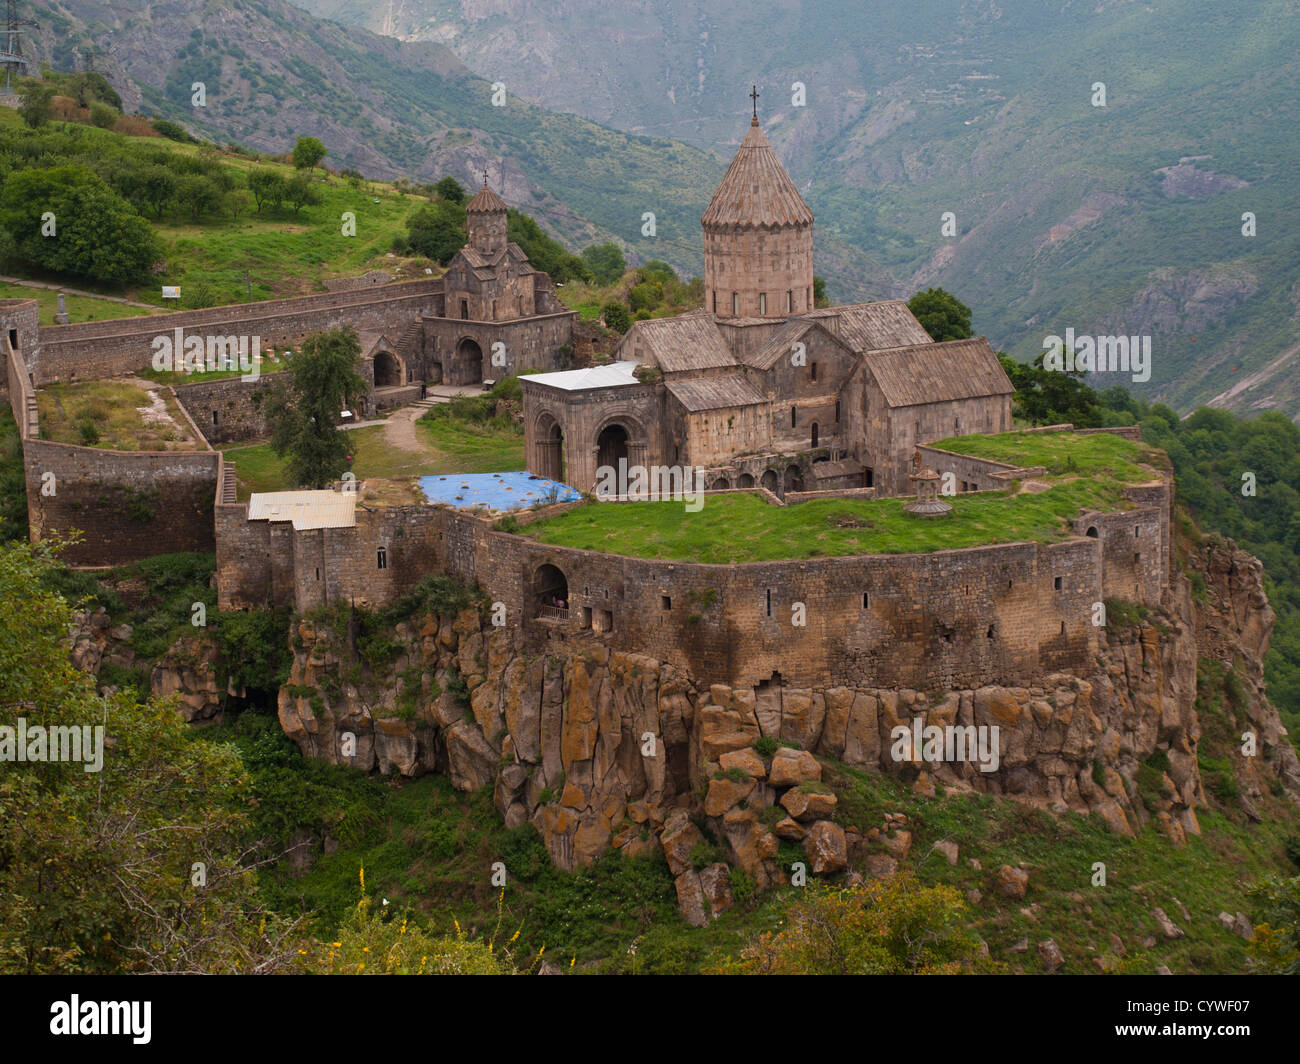 Tatev monastery on the rocky edge of the mountain Stock Photo